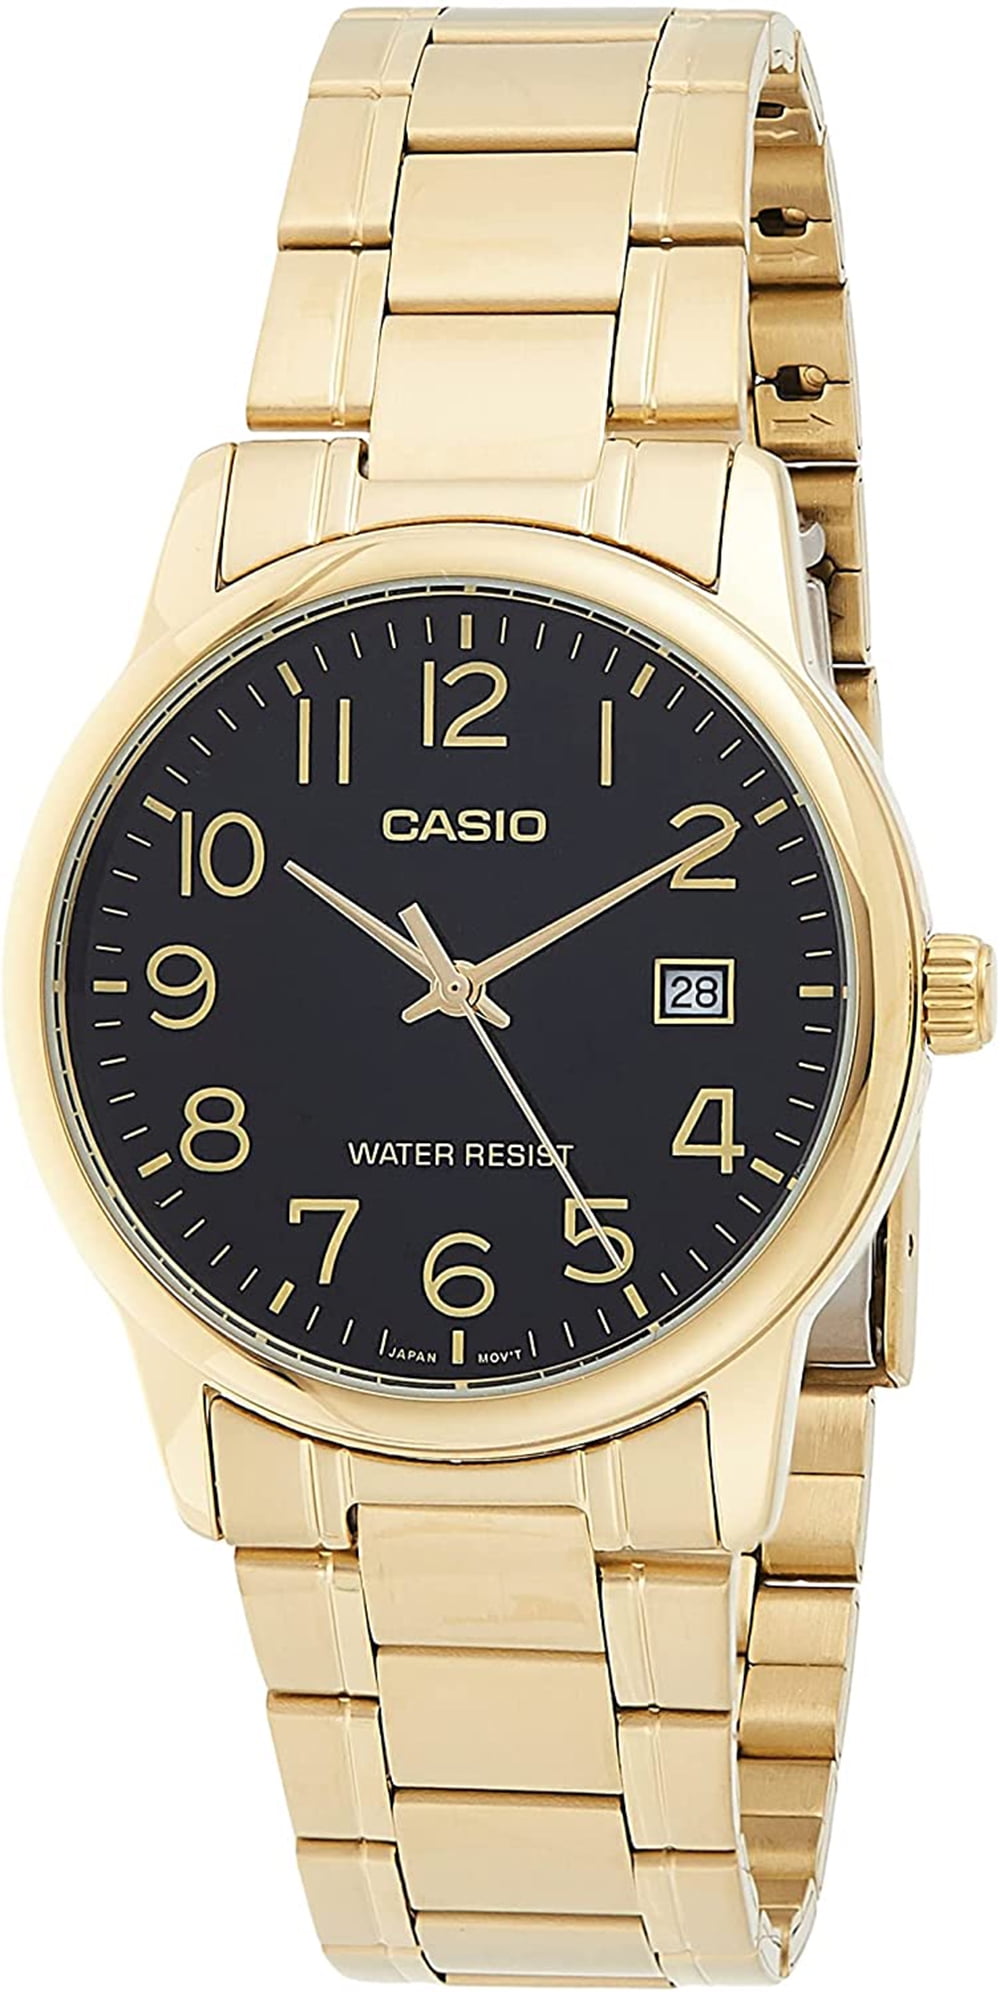 reloj casio dorado mujer - Buscar con Google  Casio gold watch, Casio  gold, Casio vintage watch